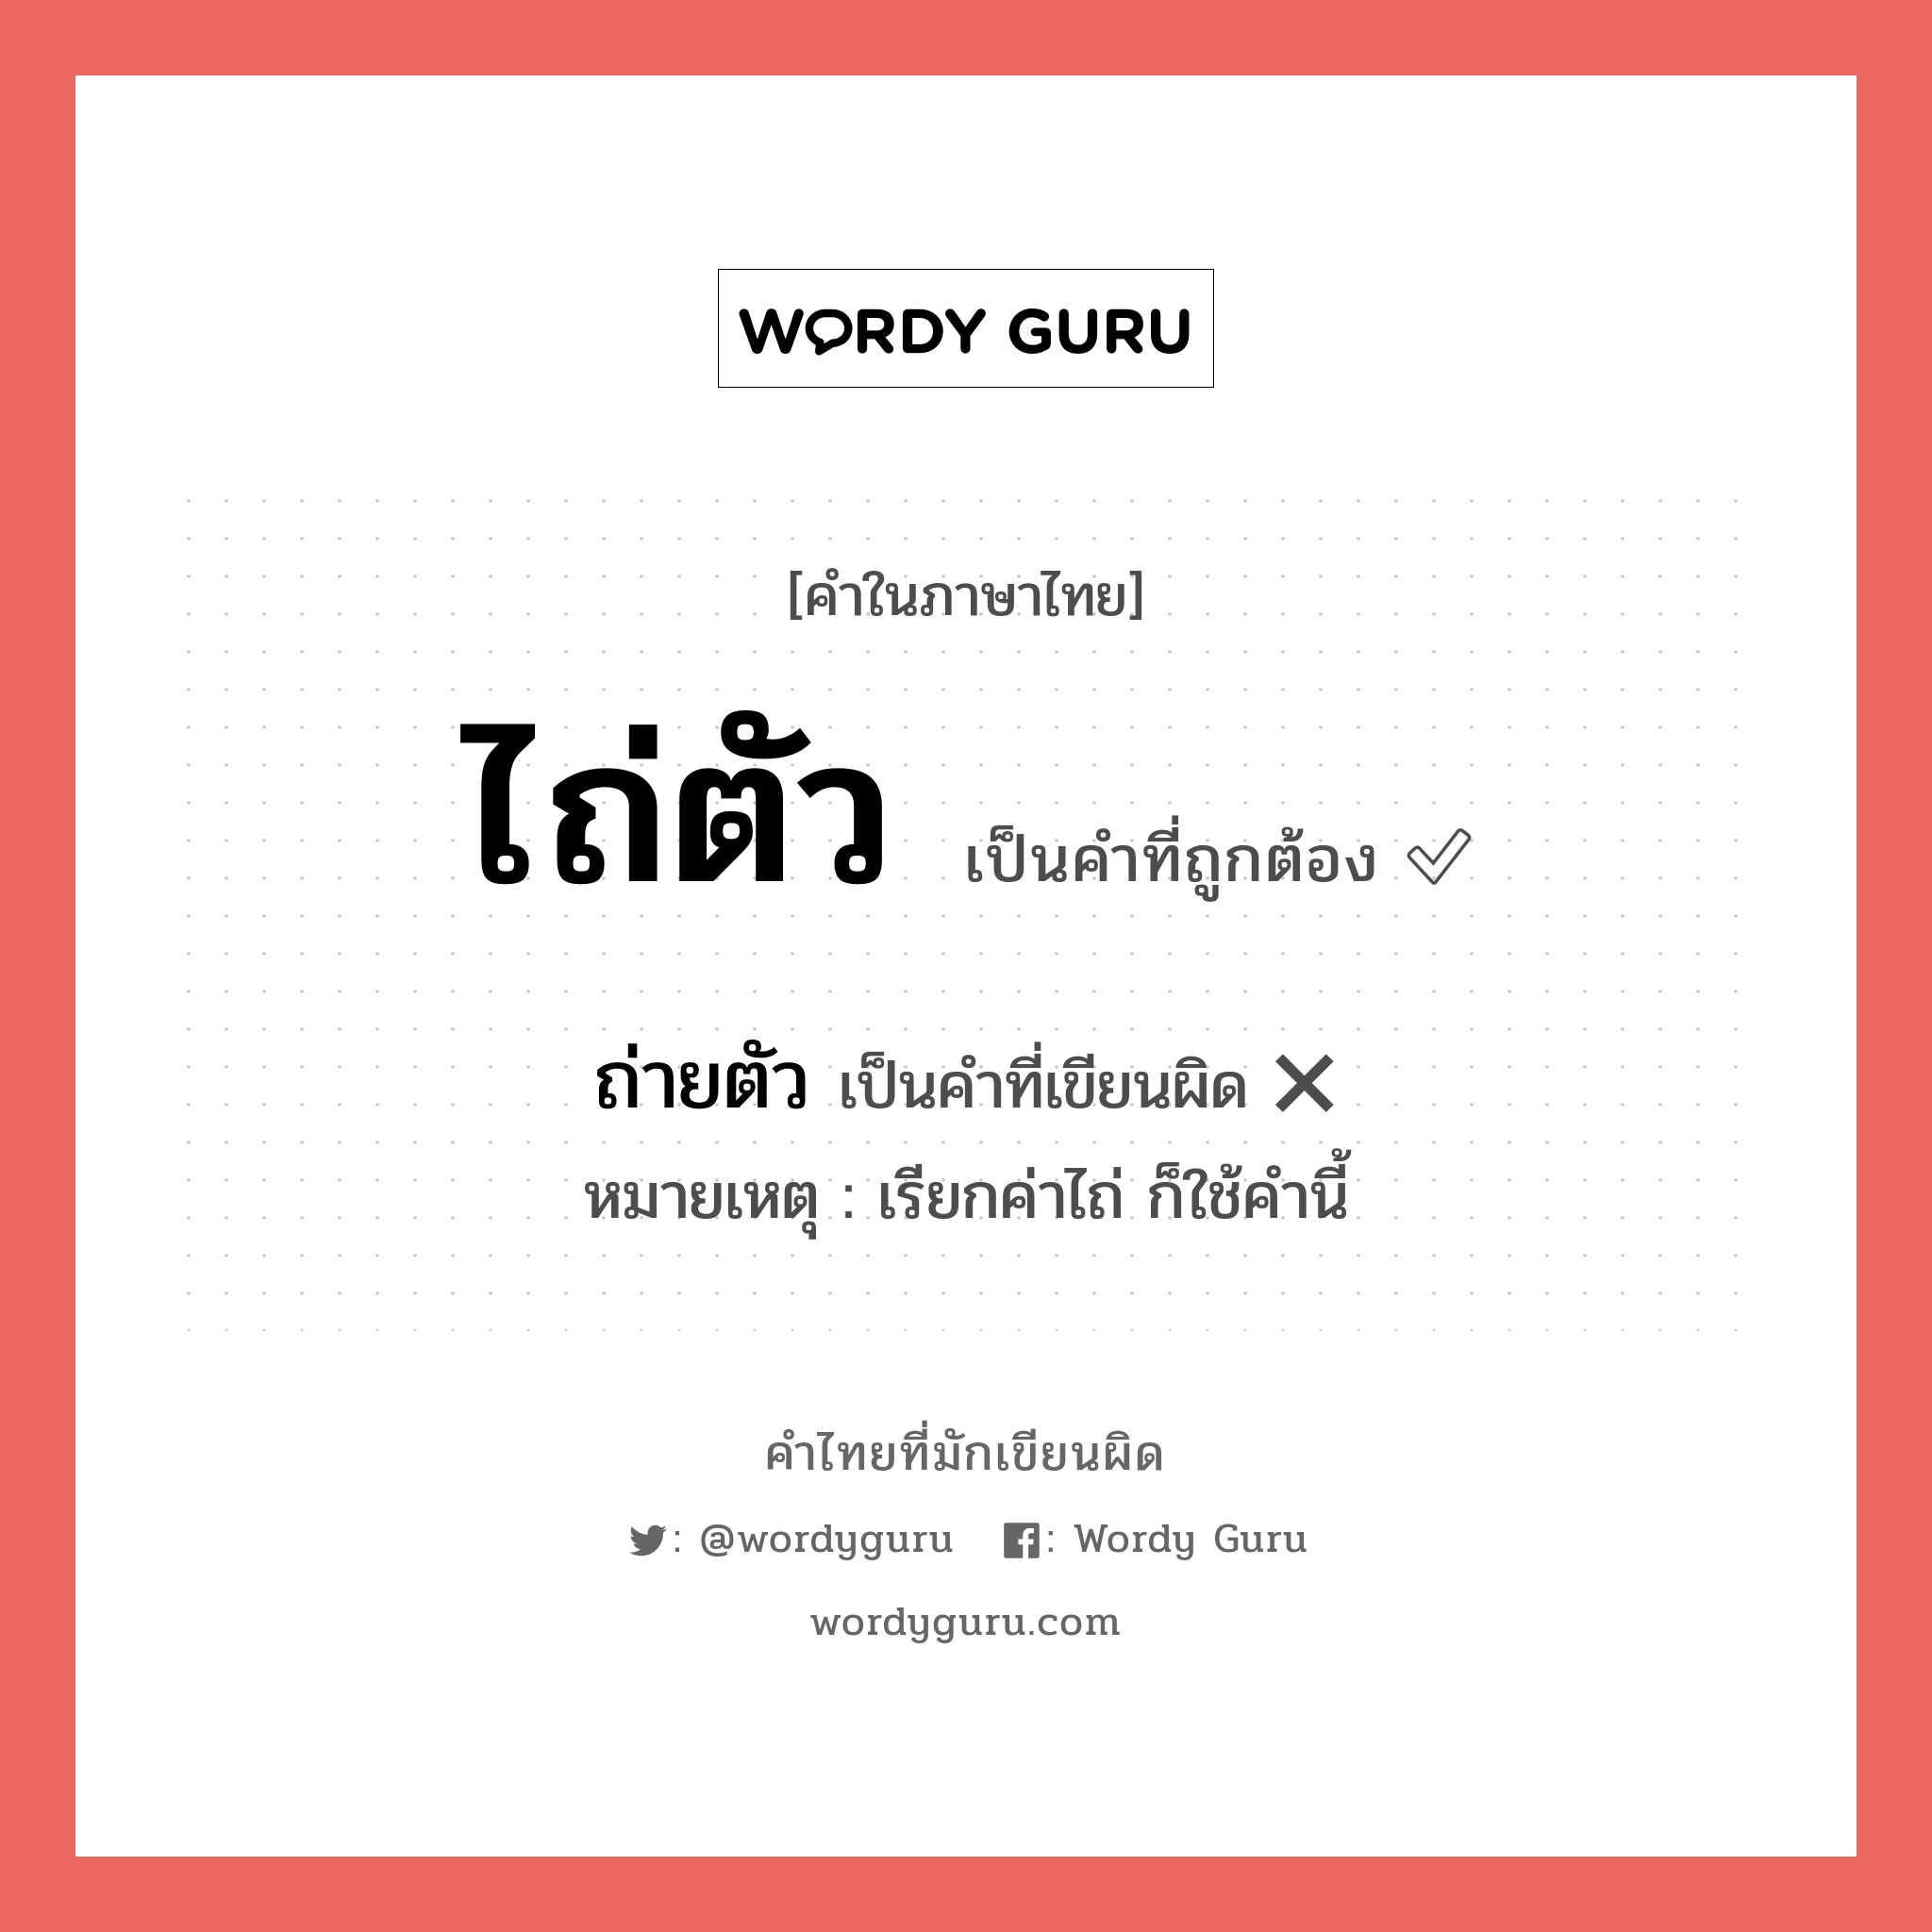 ไถ่ตัว หรือ ถ่ายตัว คำไหนเขียนถูก?, คำในภาษาไทยที่มักเขียนผิด ไถ่ตัว คำที่ผิด ❌ ถ่ายตัว หมายเหตุ เรียกค่าไถ่ ก็ใช้คำนี้